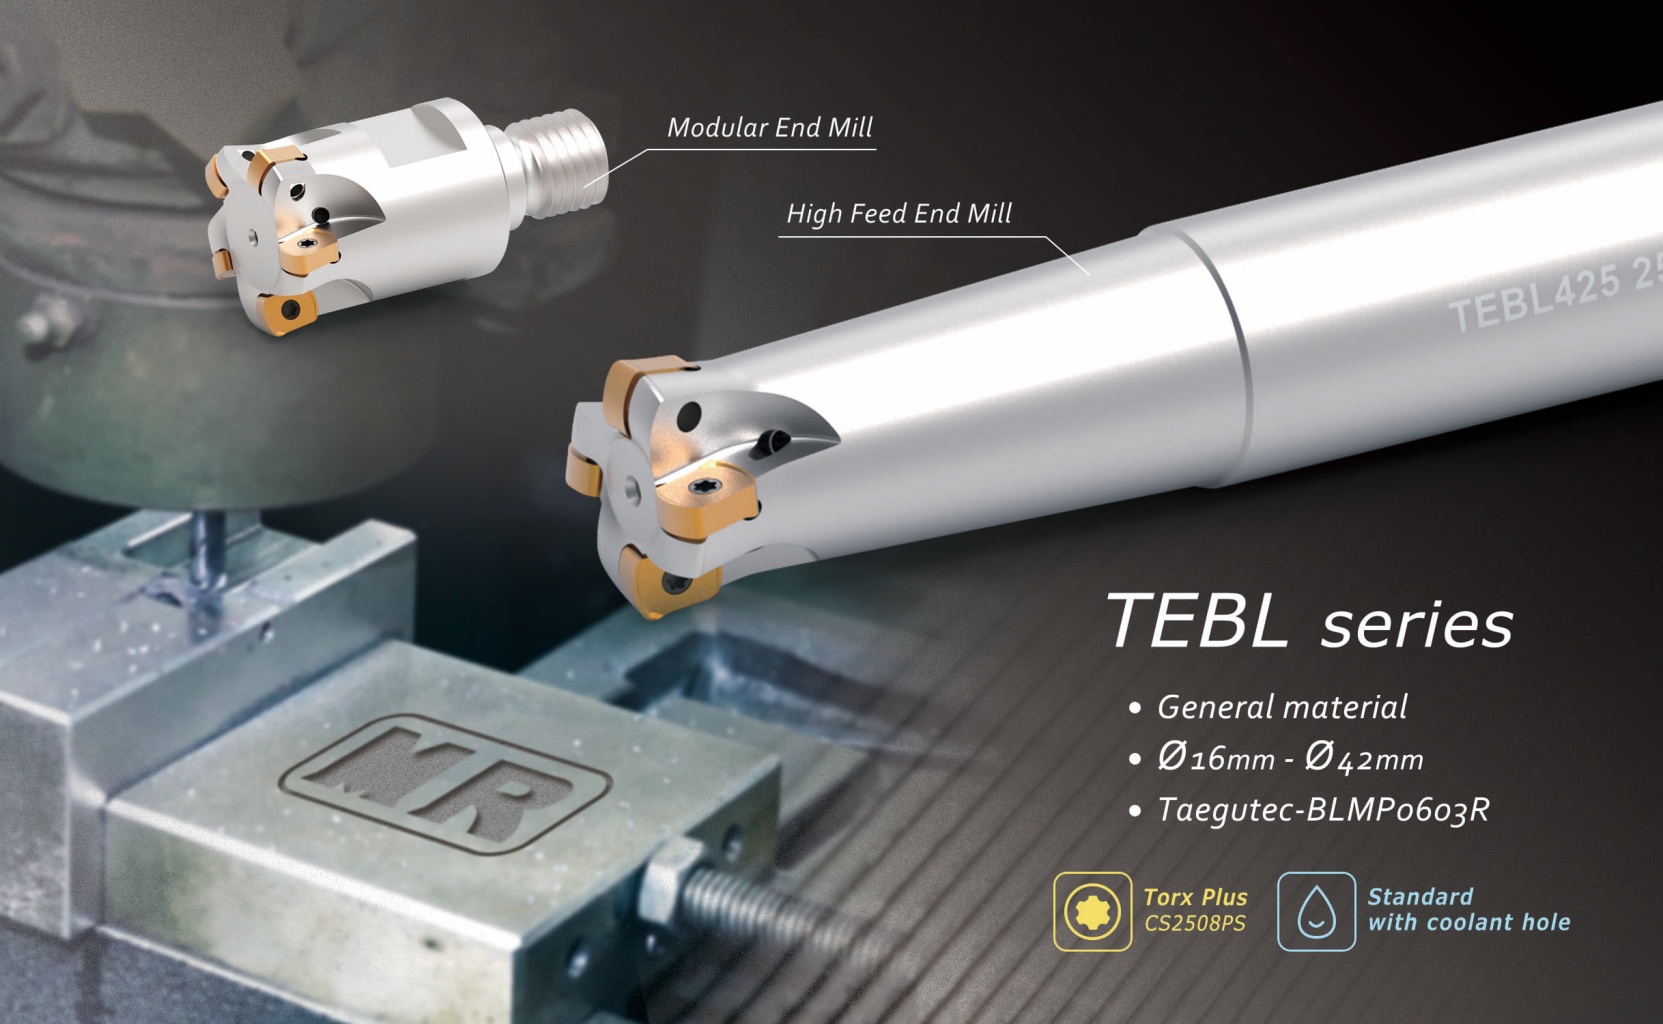 Products|Mills - TEBL series (End Mill/Modular Mill)